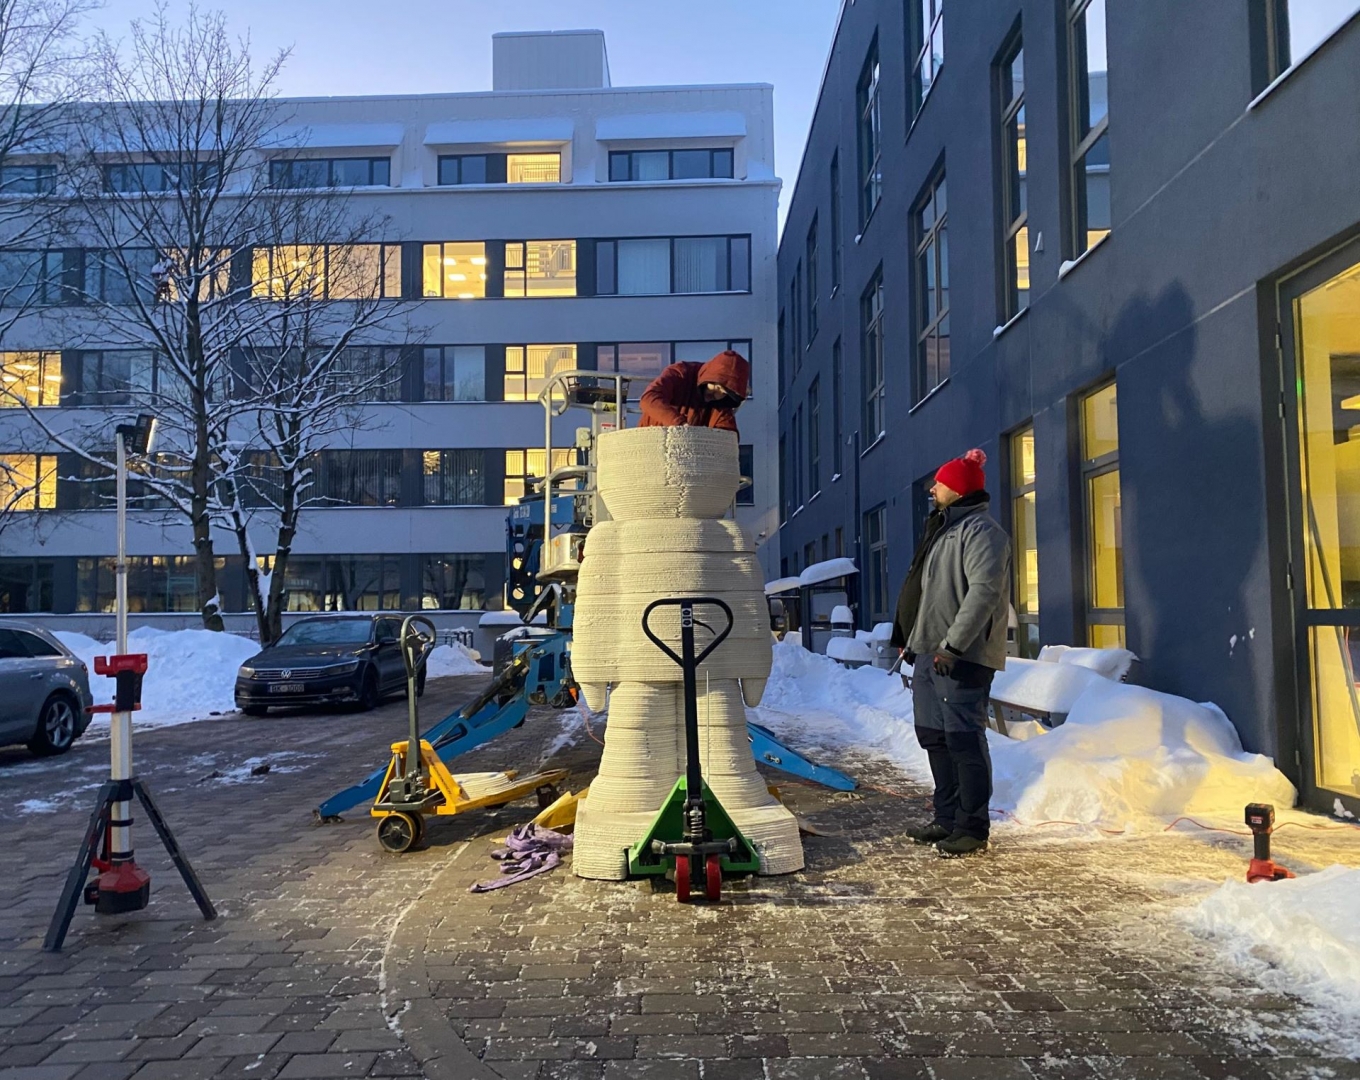 Atklās pirmo lielizmēra 3D betona drukāto vides objektu Baltijā